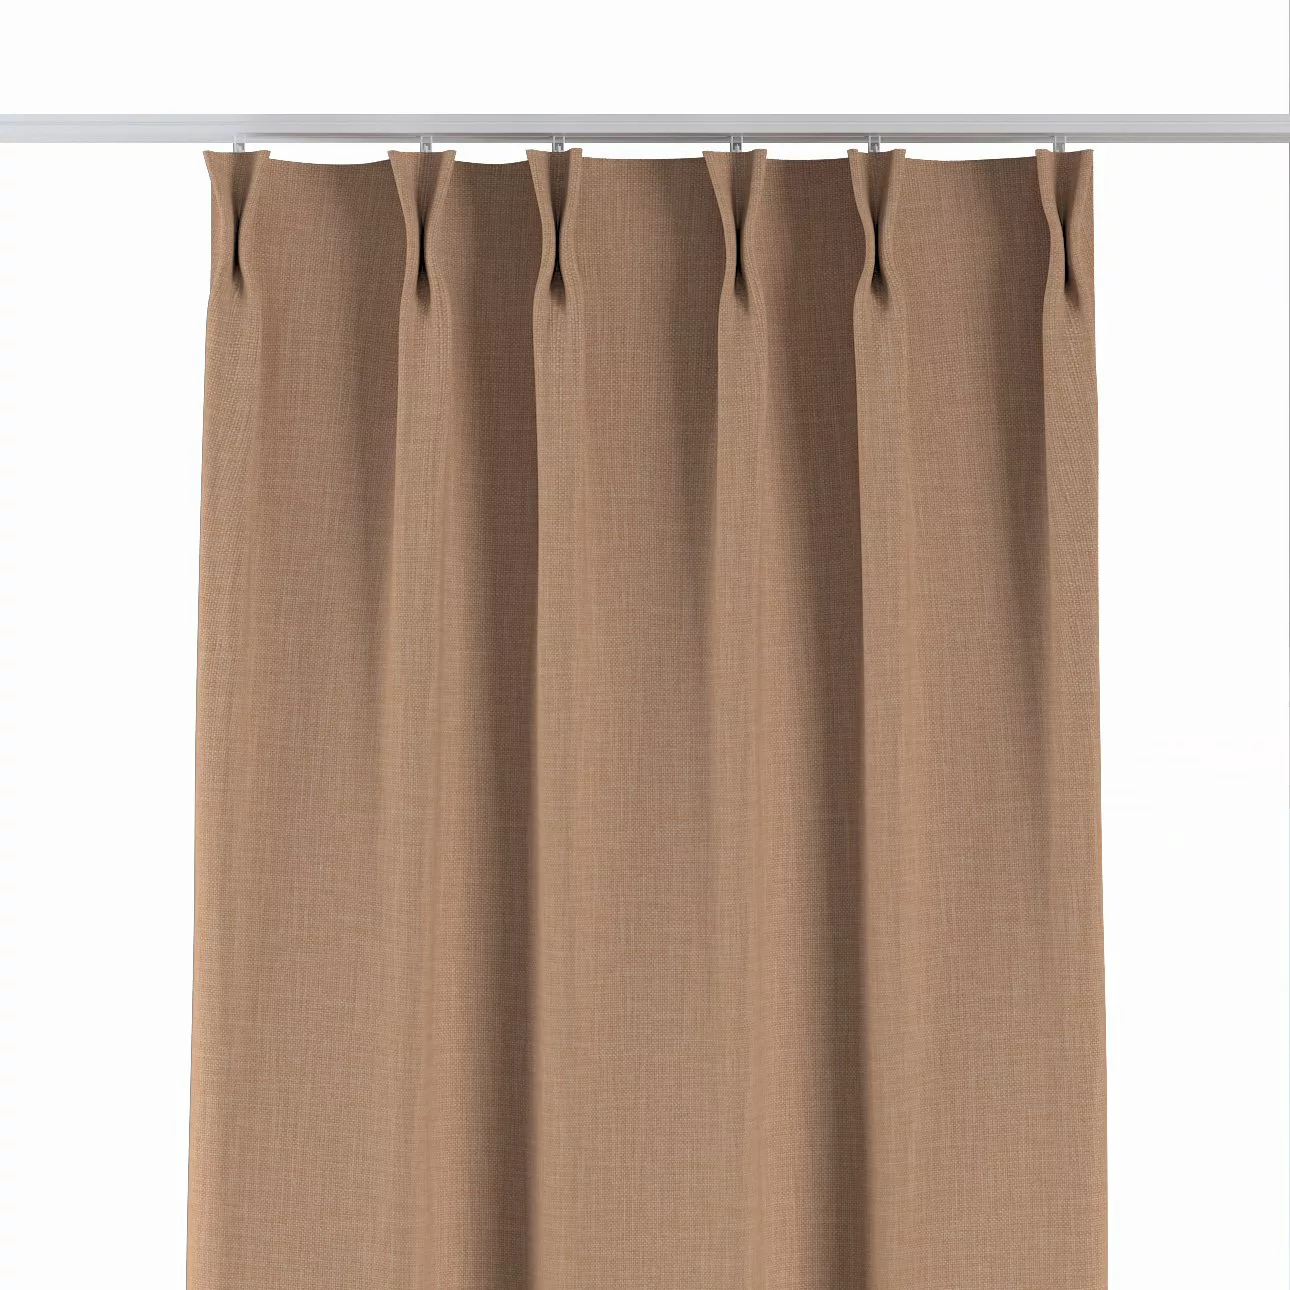 Vorhang mit flämischen 2-er Falten, sand, Sensual Premium (144-44) günstig online kaufen